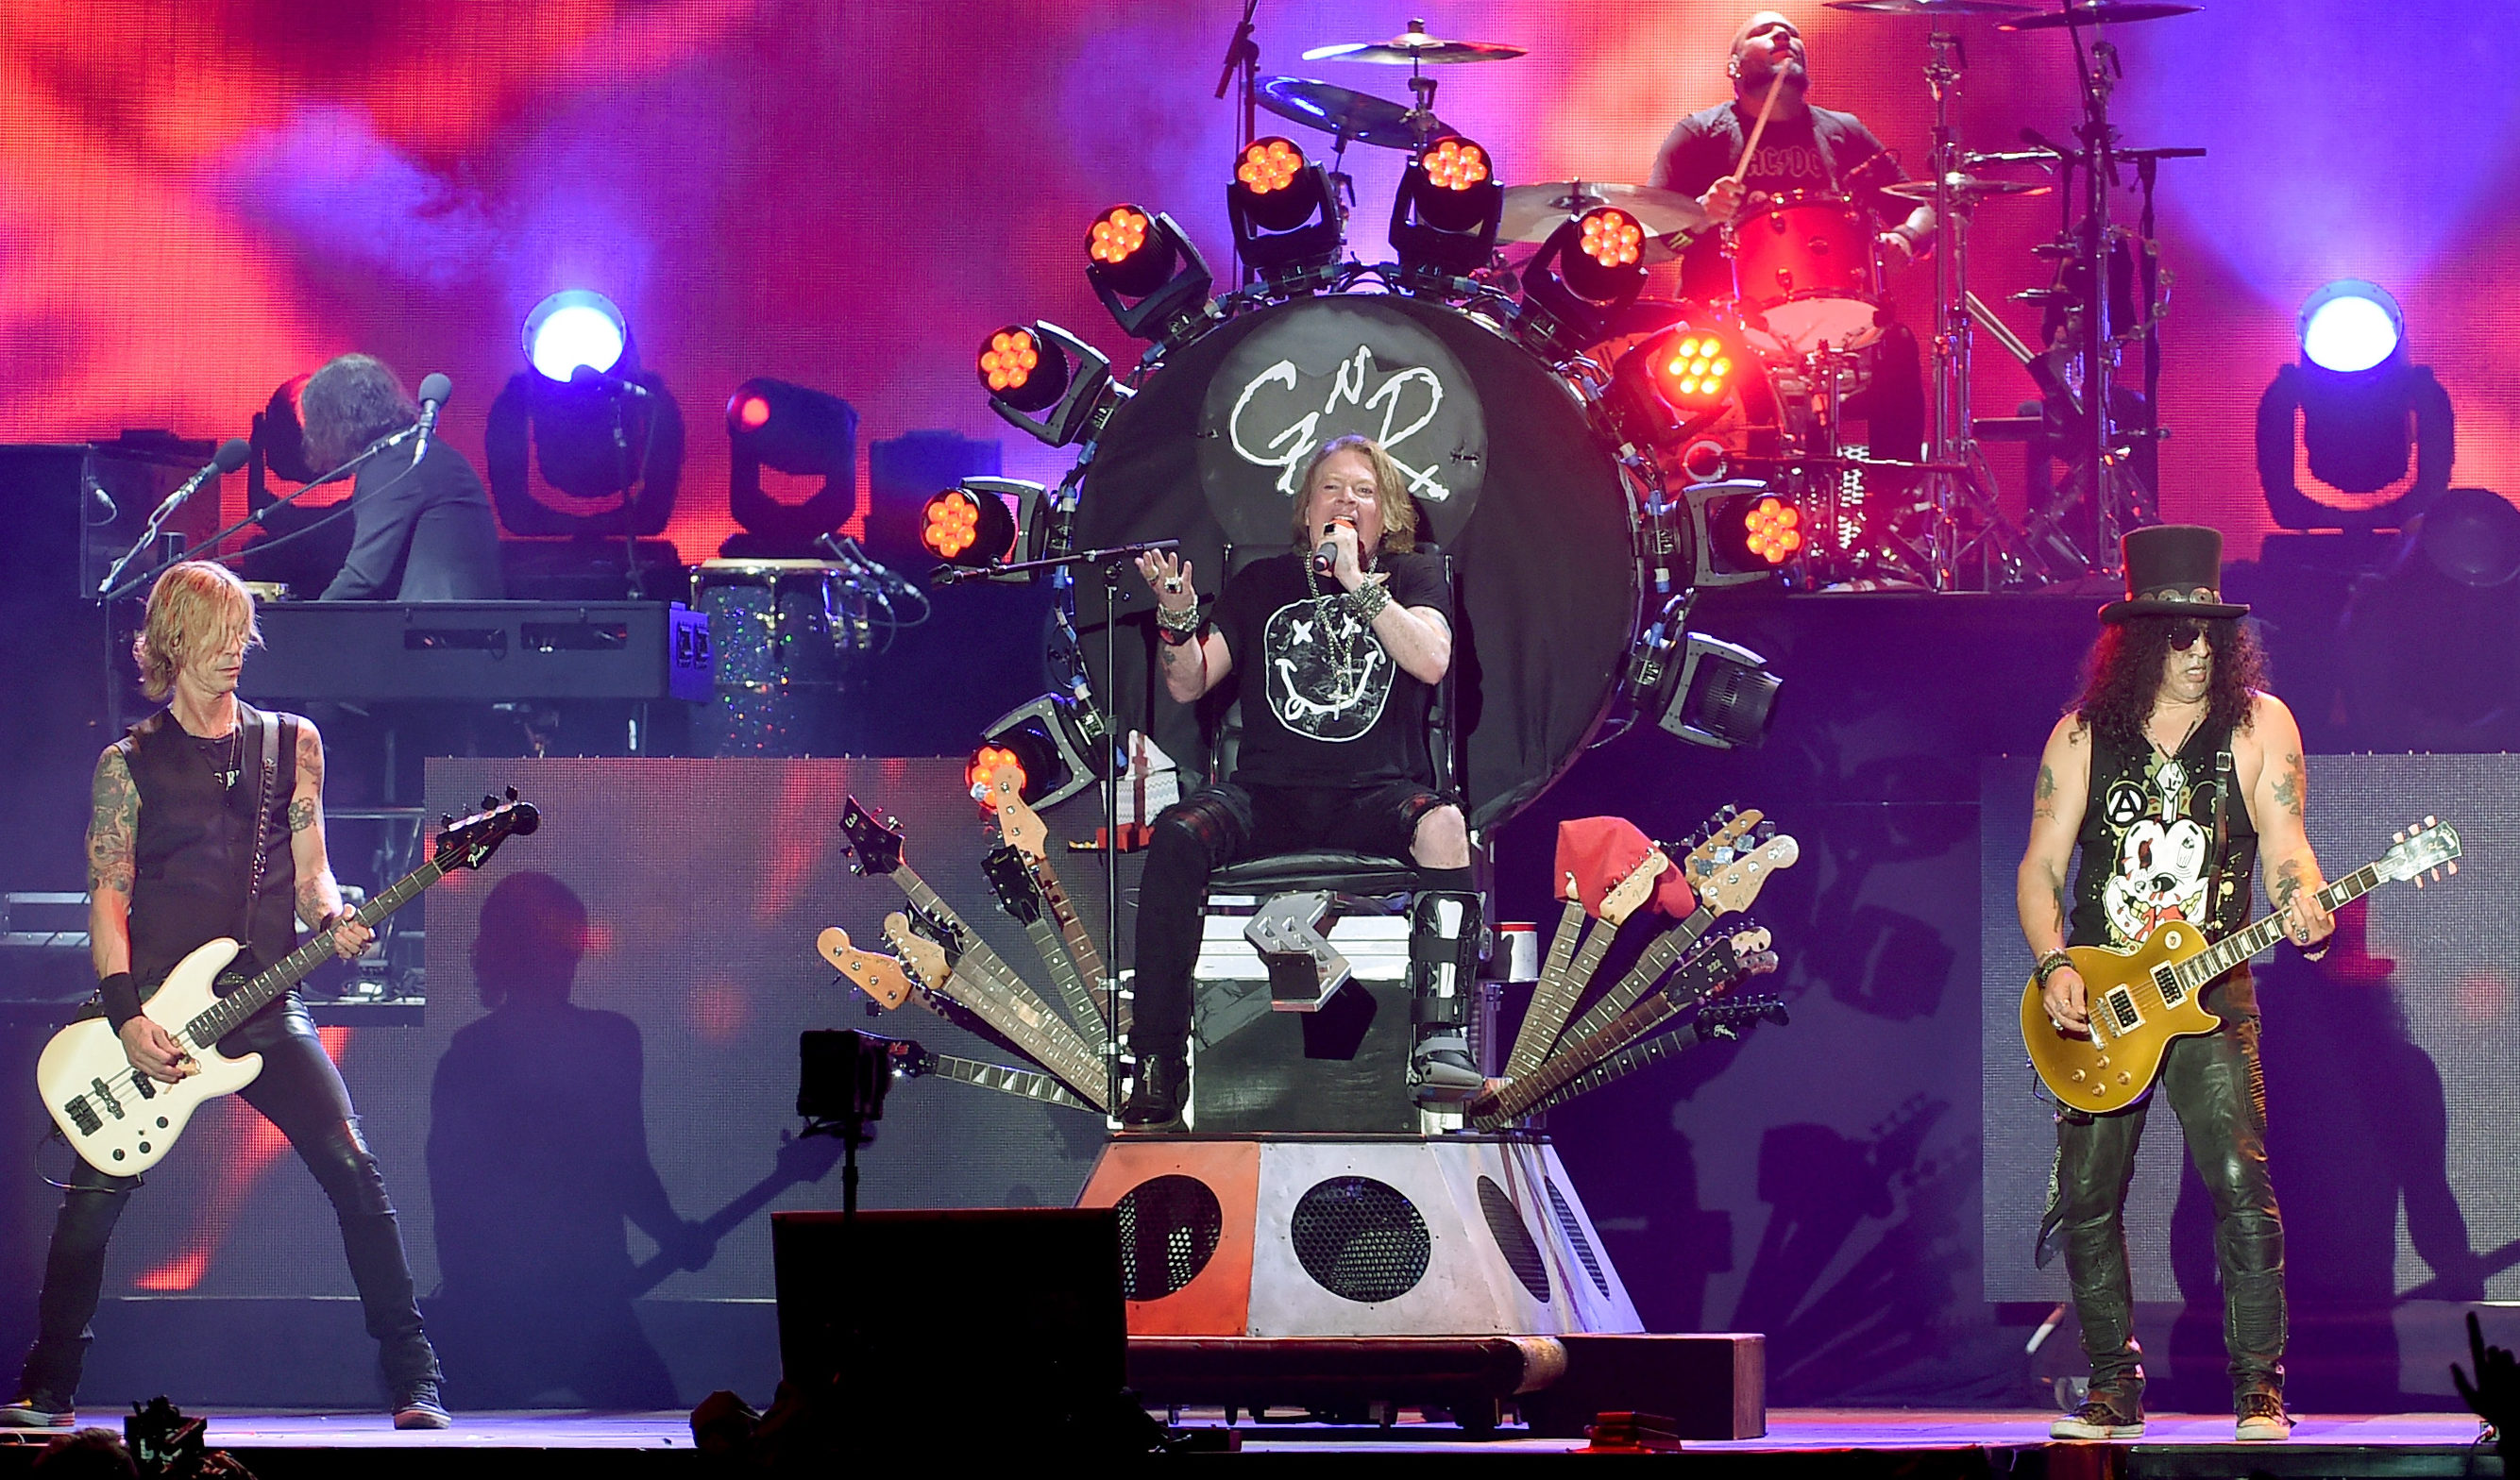 Axl Rose, Slash, and Duff McKagan of Guns N' Roses